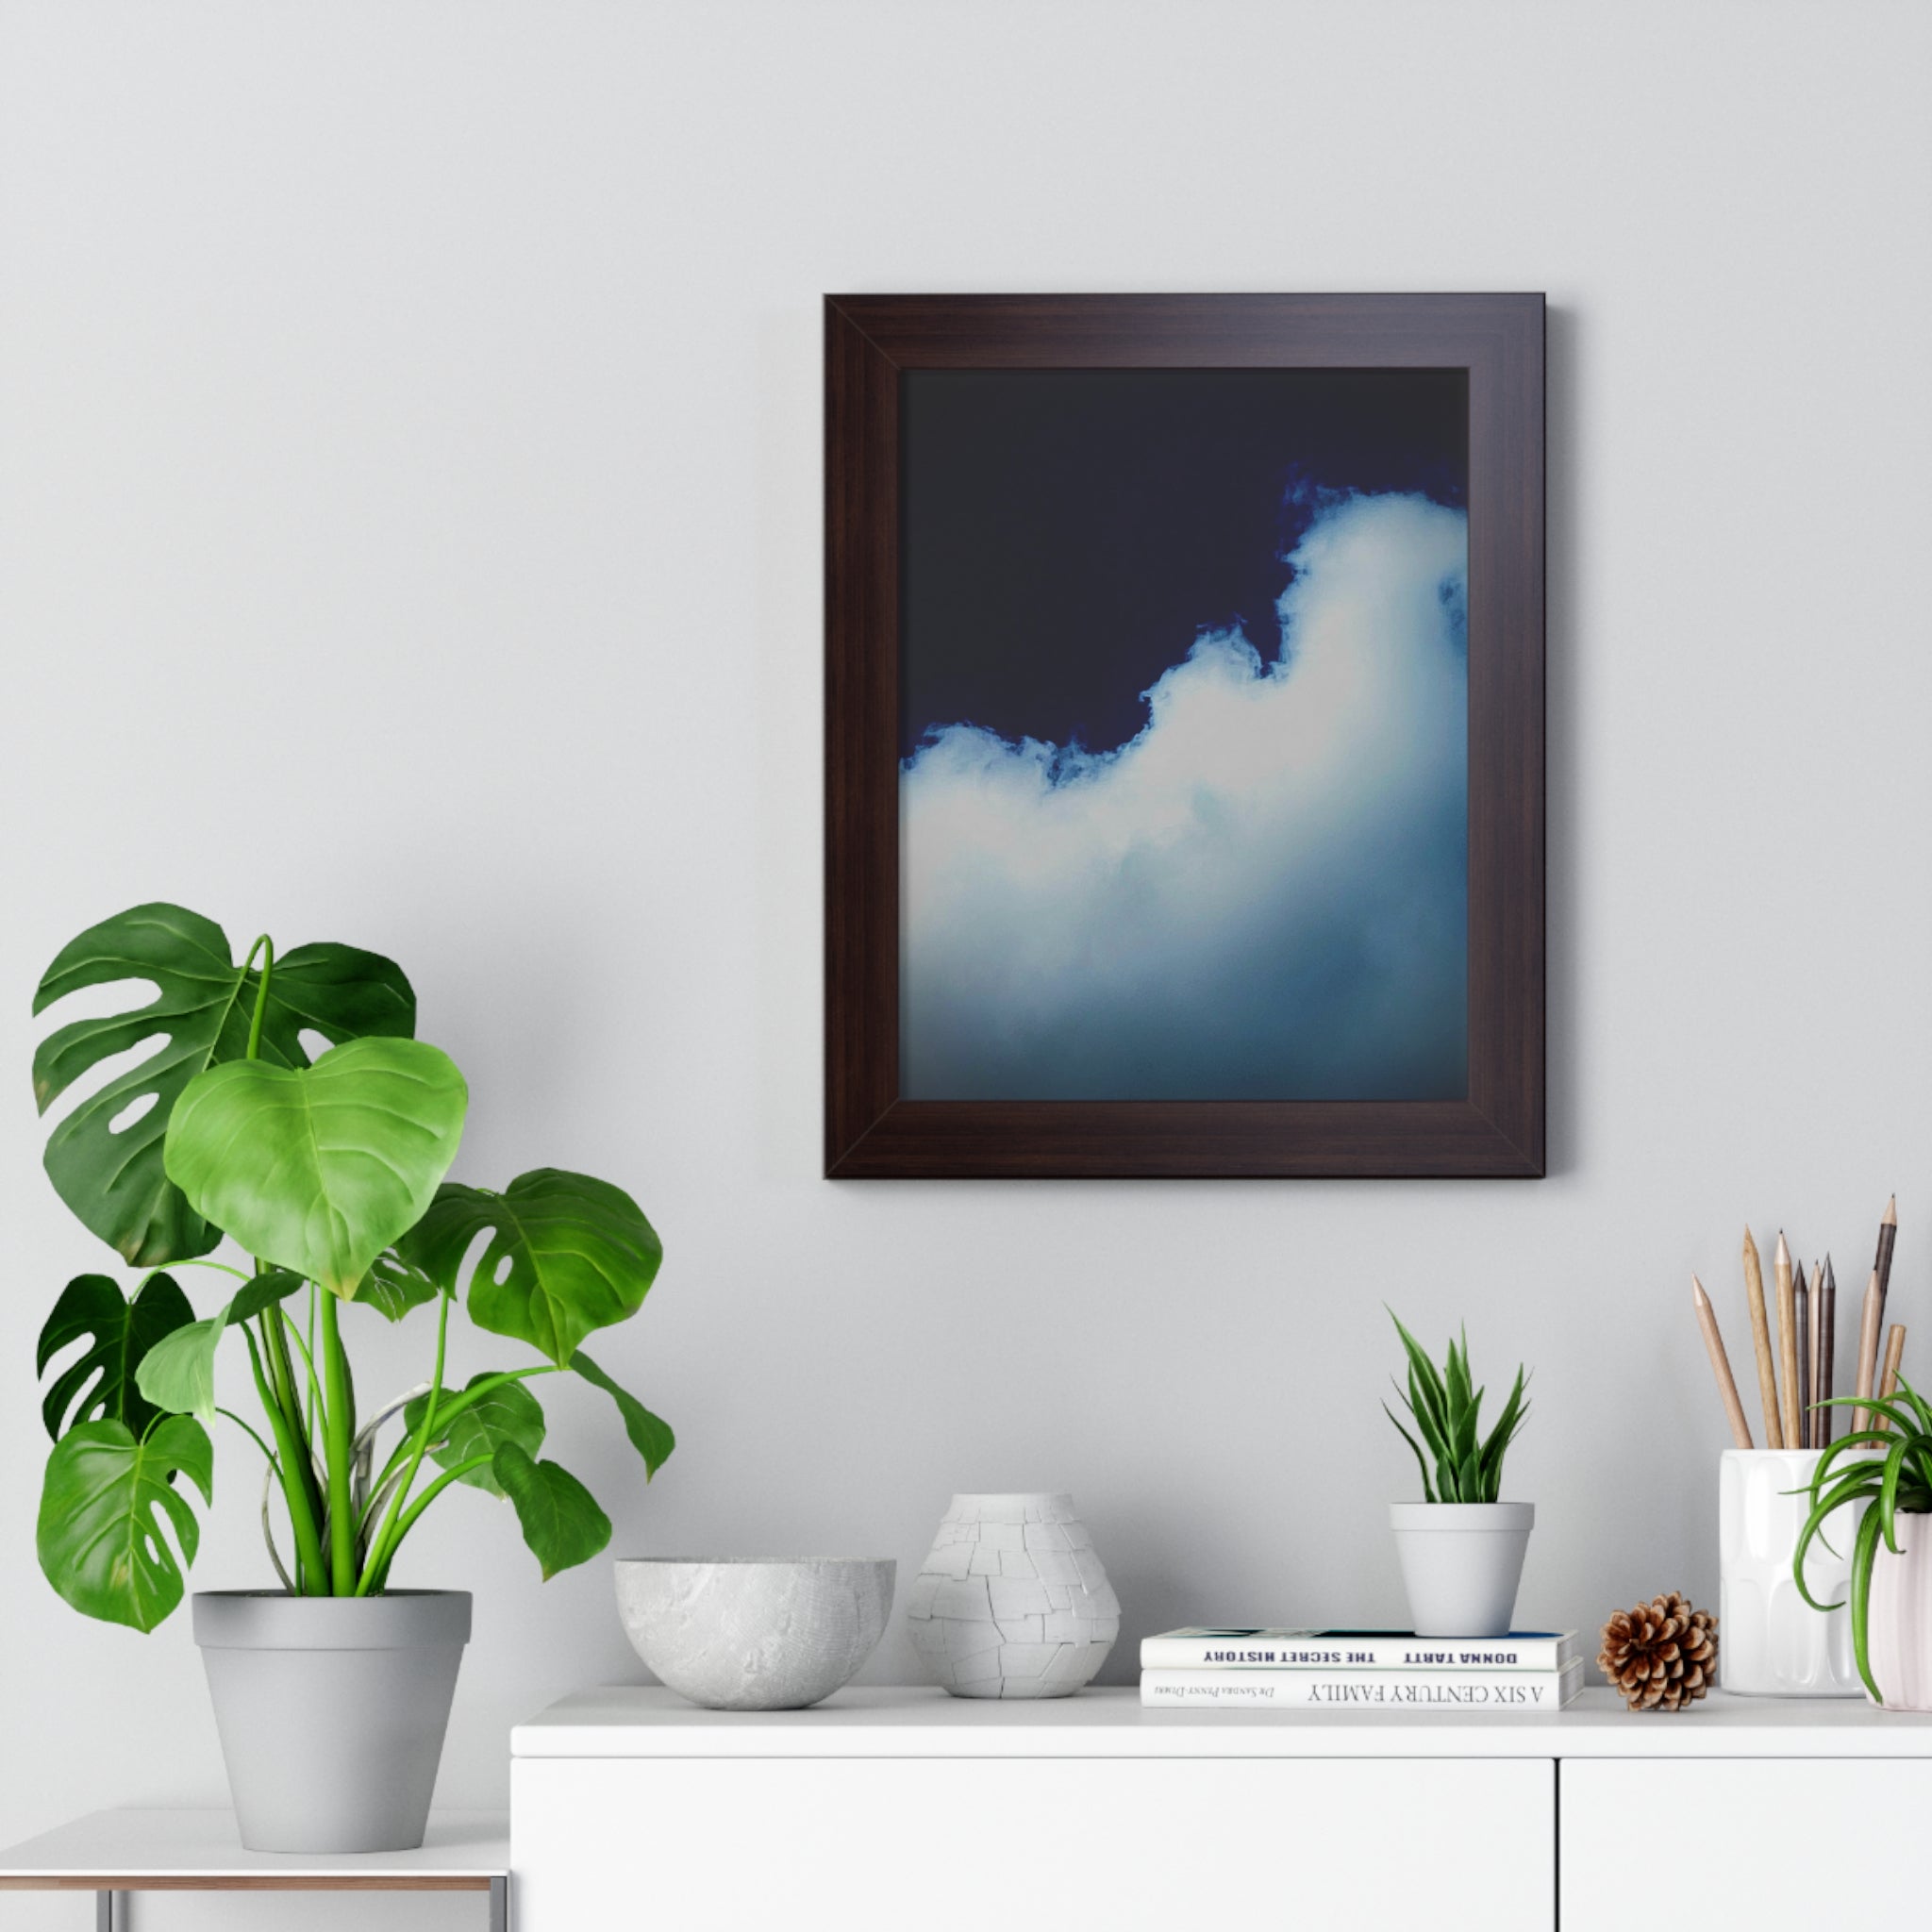 Framed 11" x 14" Vertical Poster of Cloud  by Jo Bird